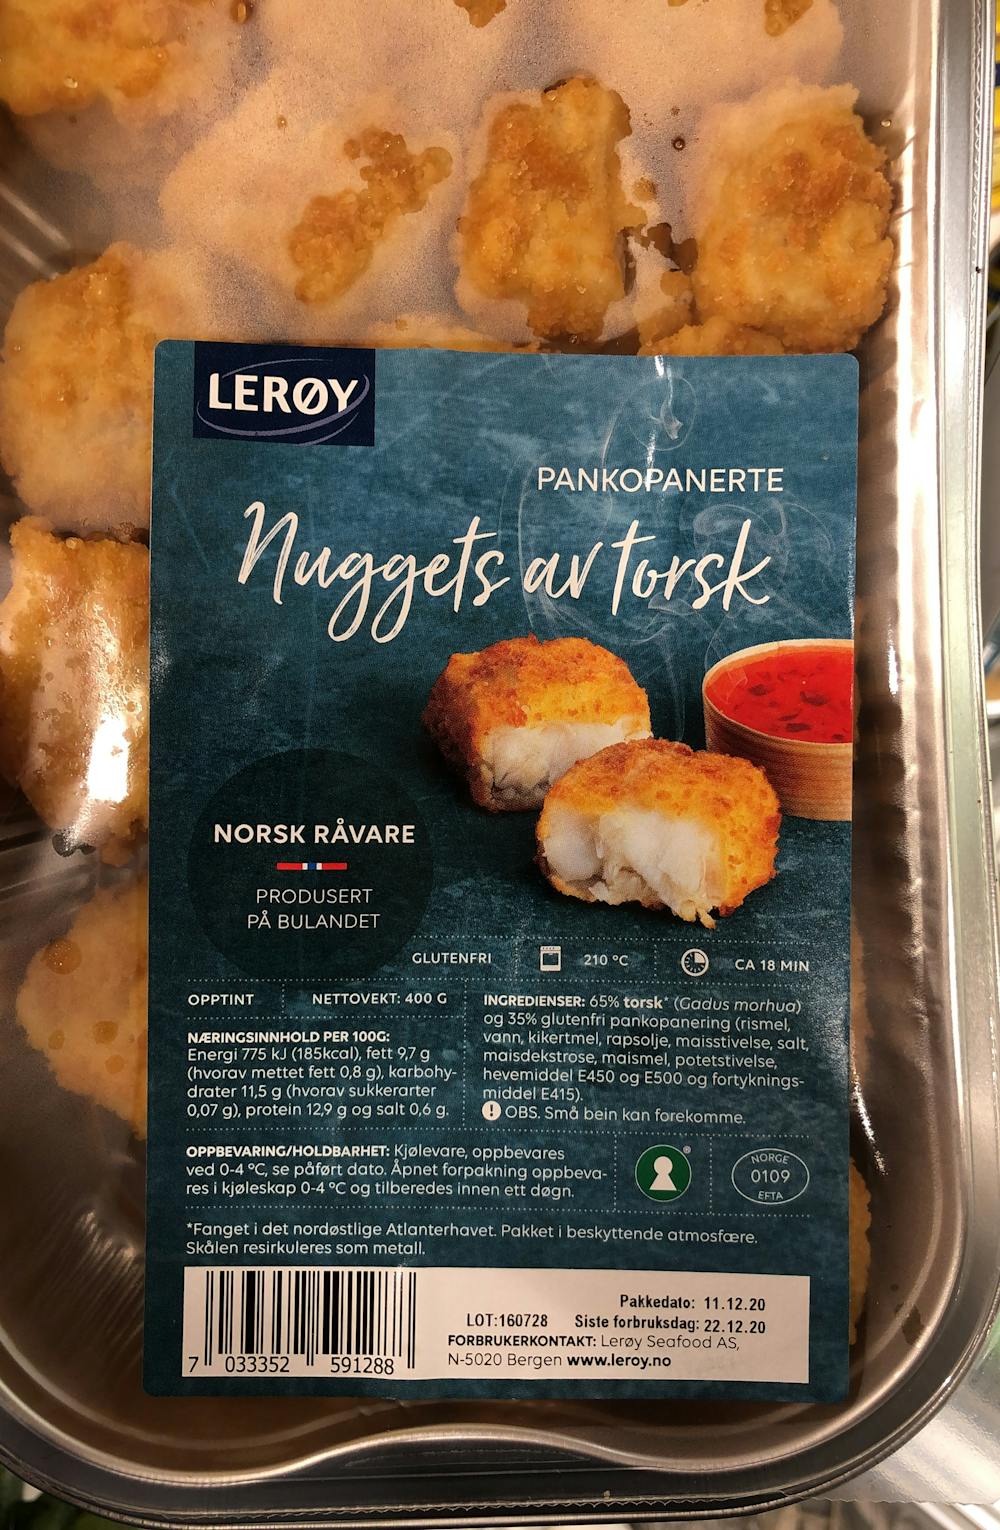 Nuggets av torsk, Lerøy